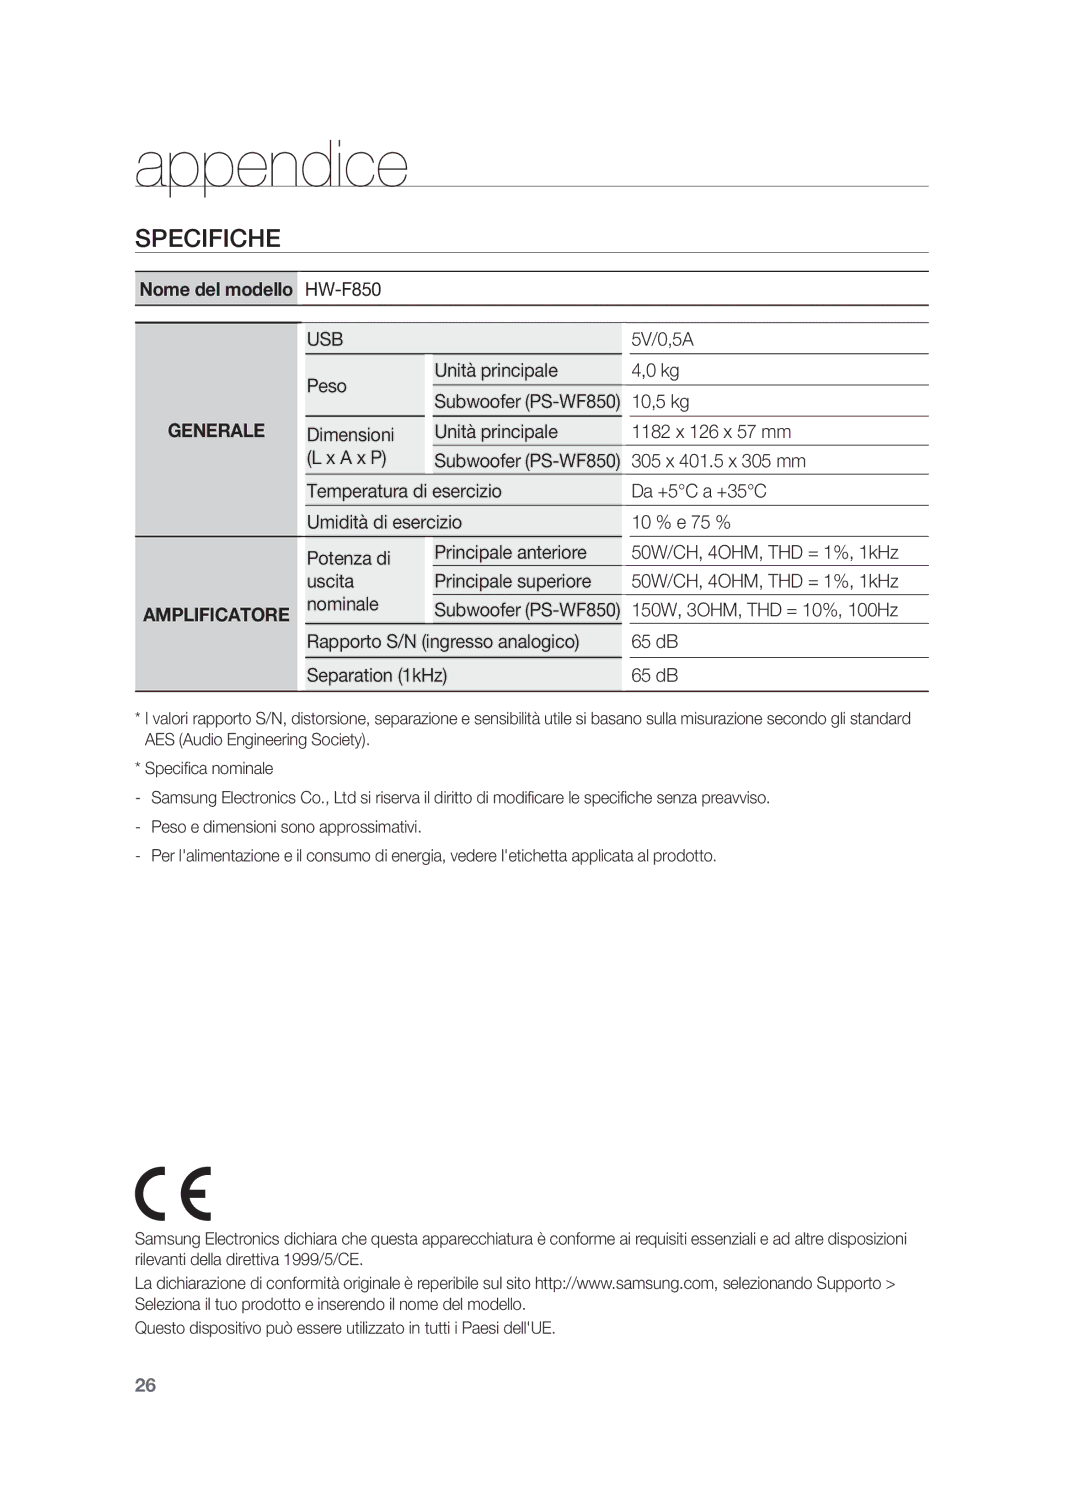 Samsung HW-F850/ZF manual Appendice, Specifiche, Nome del modello, Generale, Amplificatore 